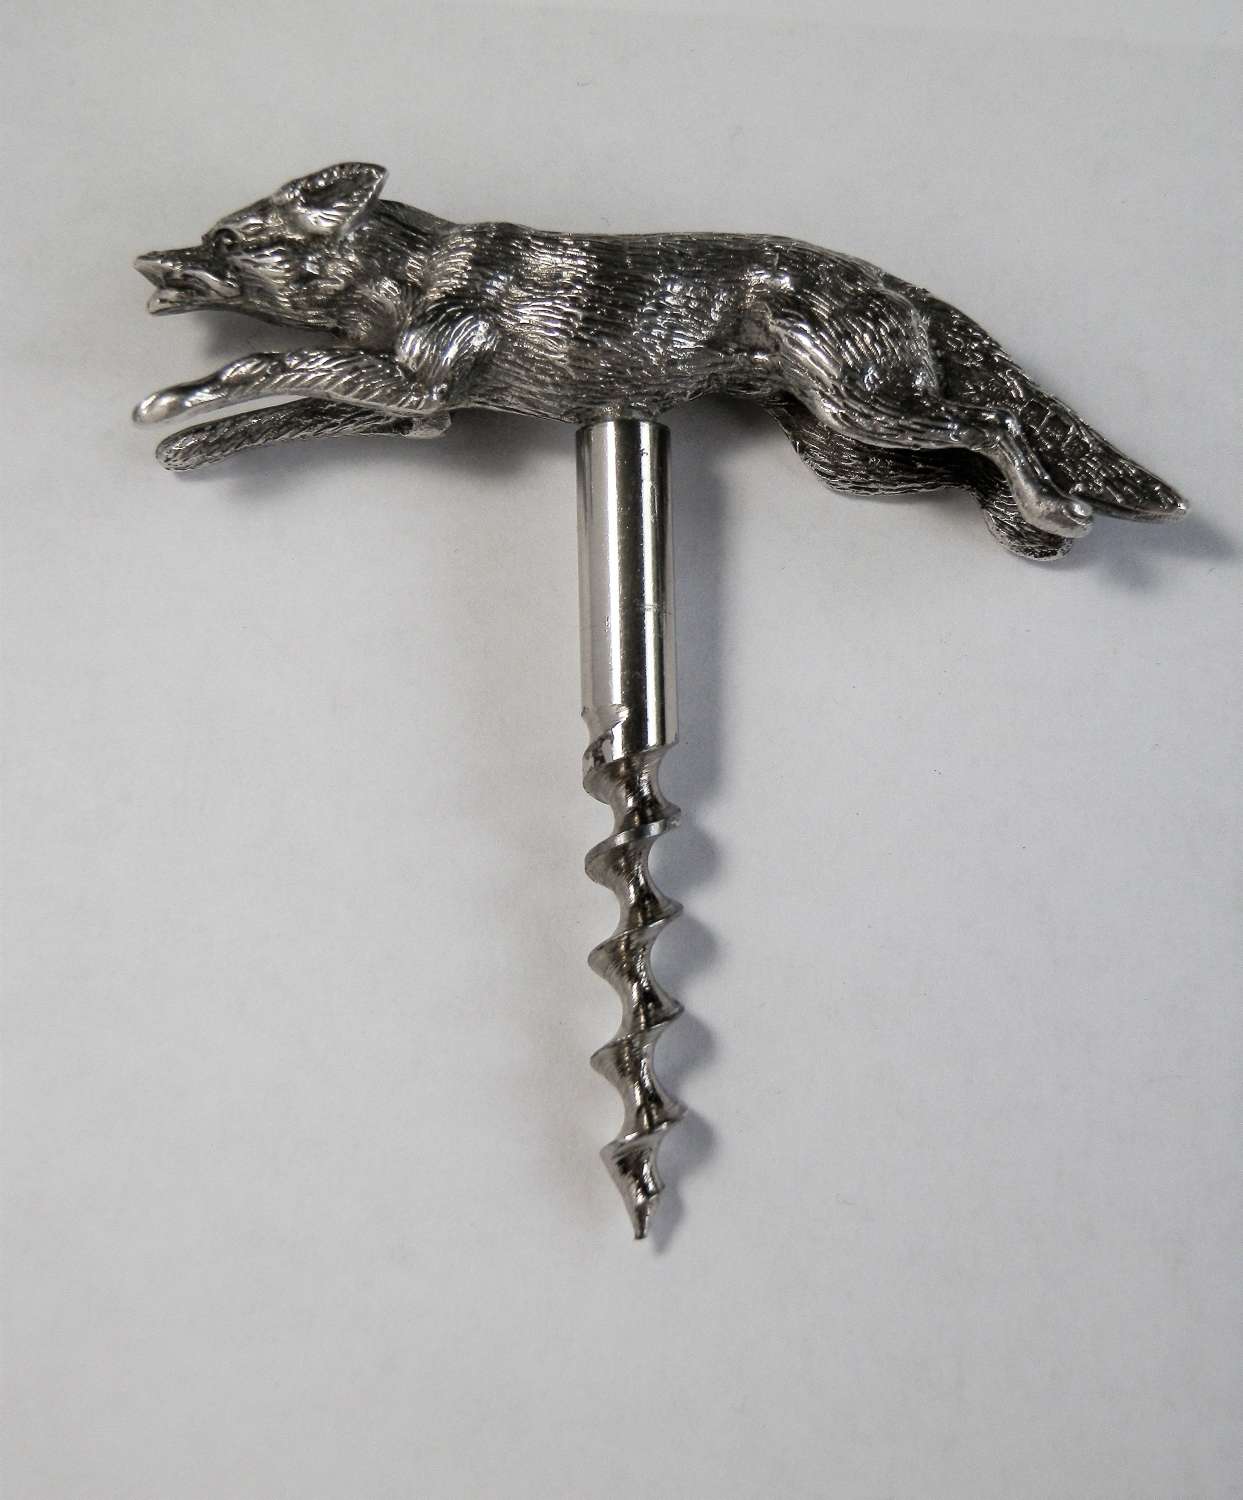 Asprey silver fox handled corkscrew, Birmingham 1941